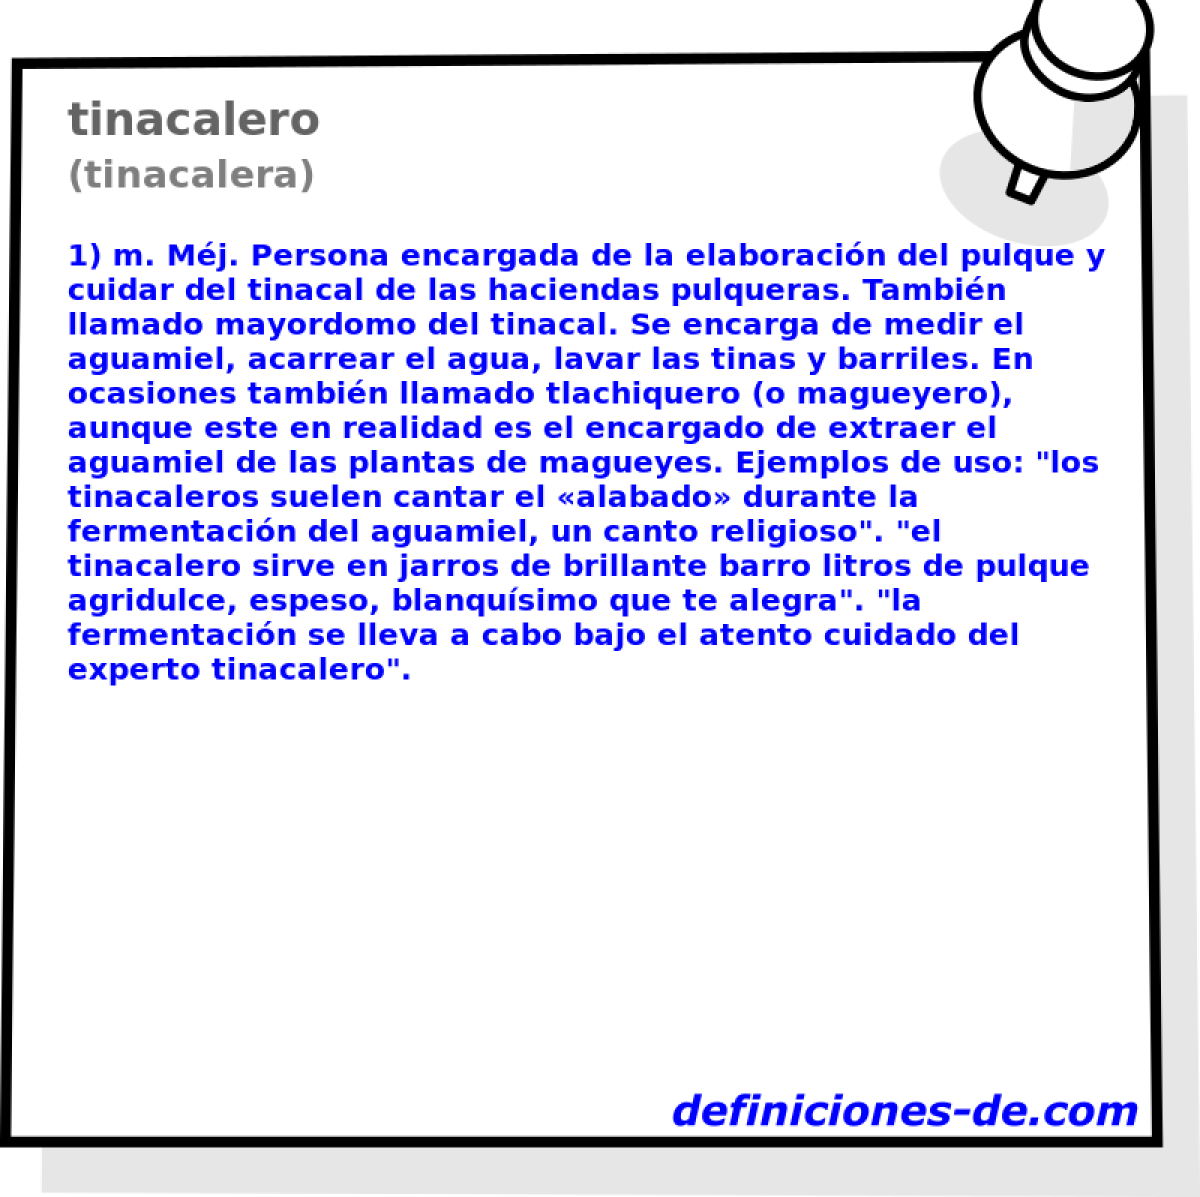 tinacalero (tinacalera)